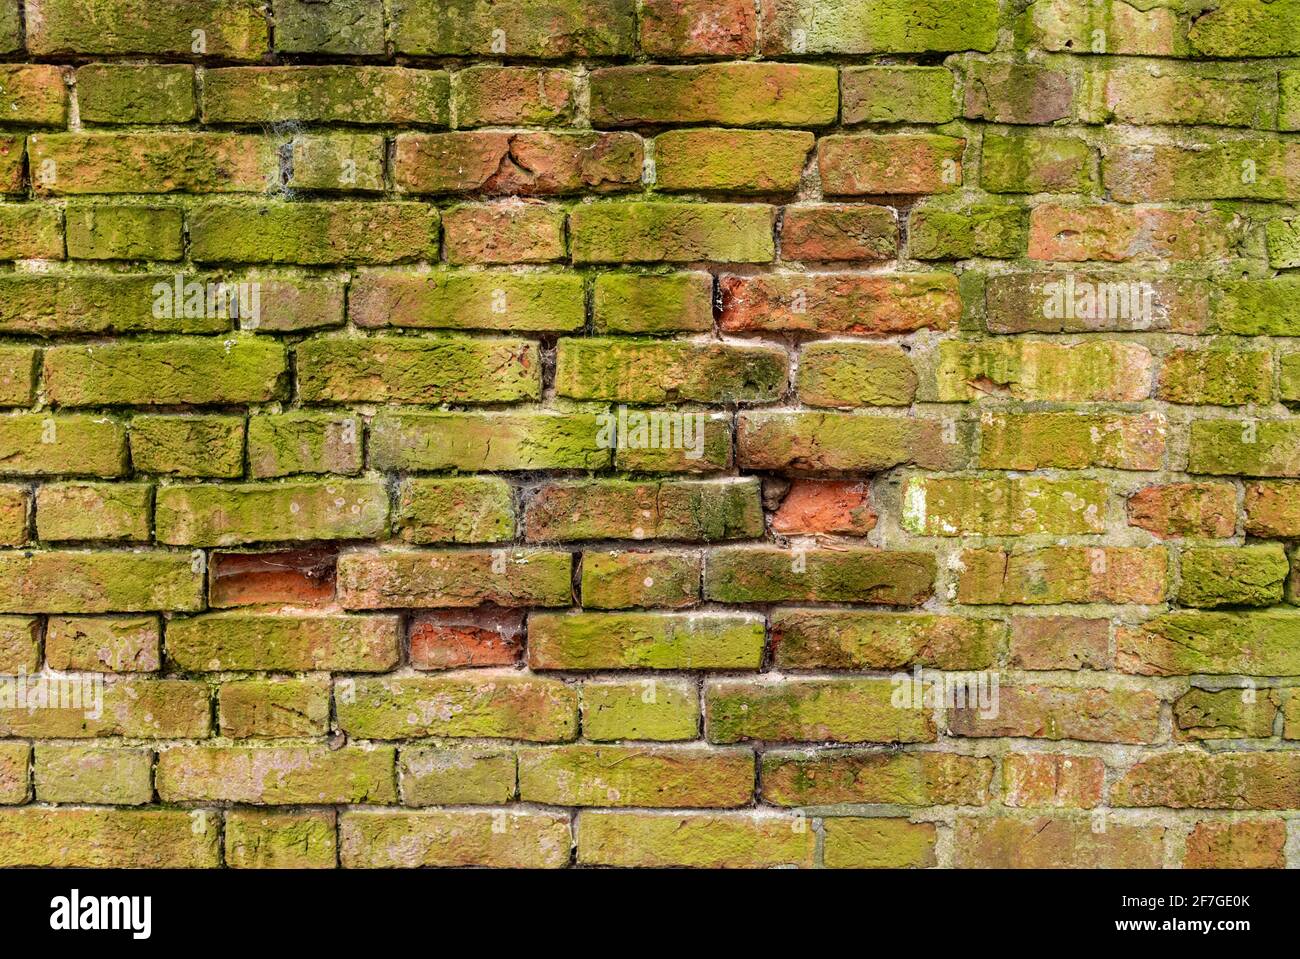 Mur de briques multicolore arrière-plan variété de briques mur de briques fait avec de vieilles briques récupérées dans un modèle régulier Banque D'Images